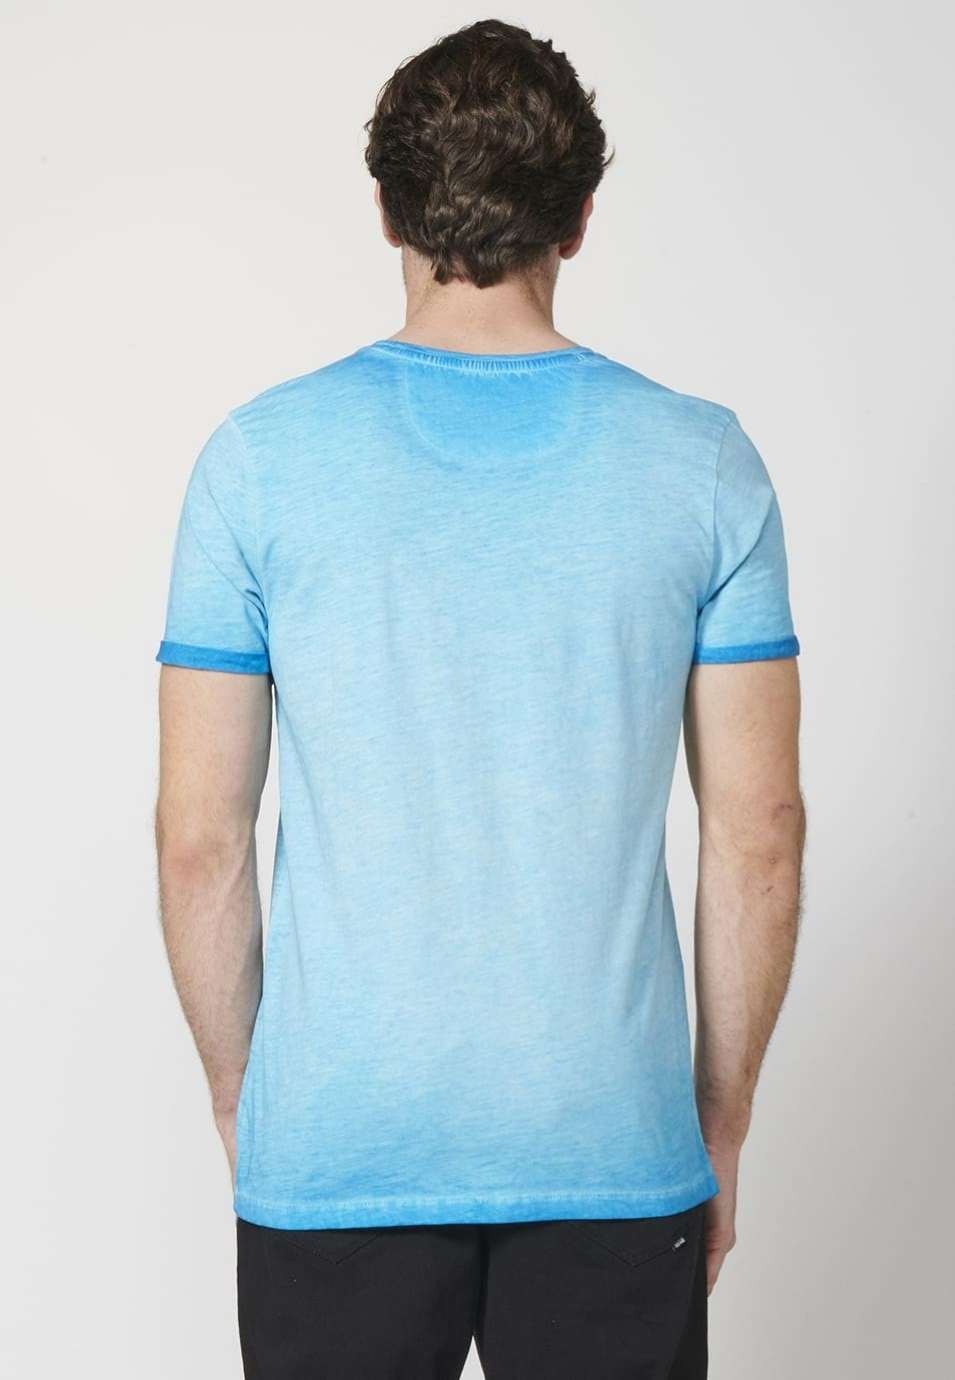 Camiseta manga corta con estampado delantero 100% algodón para hombre 5